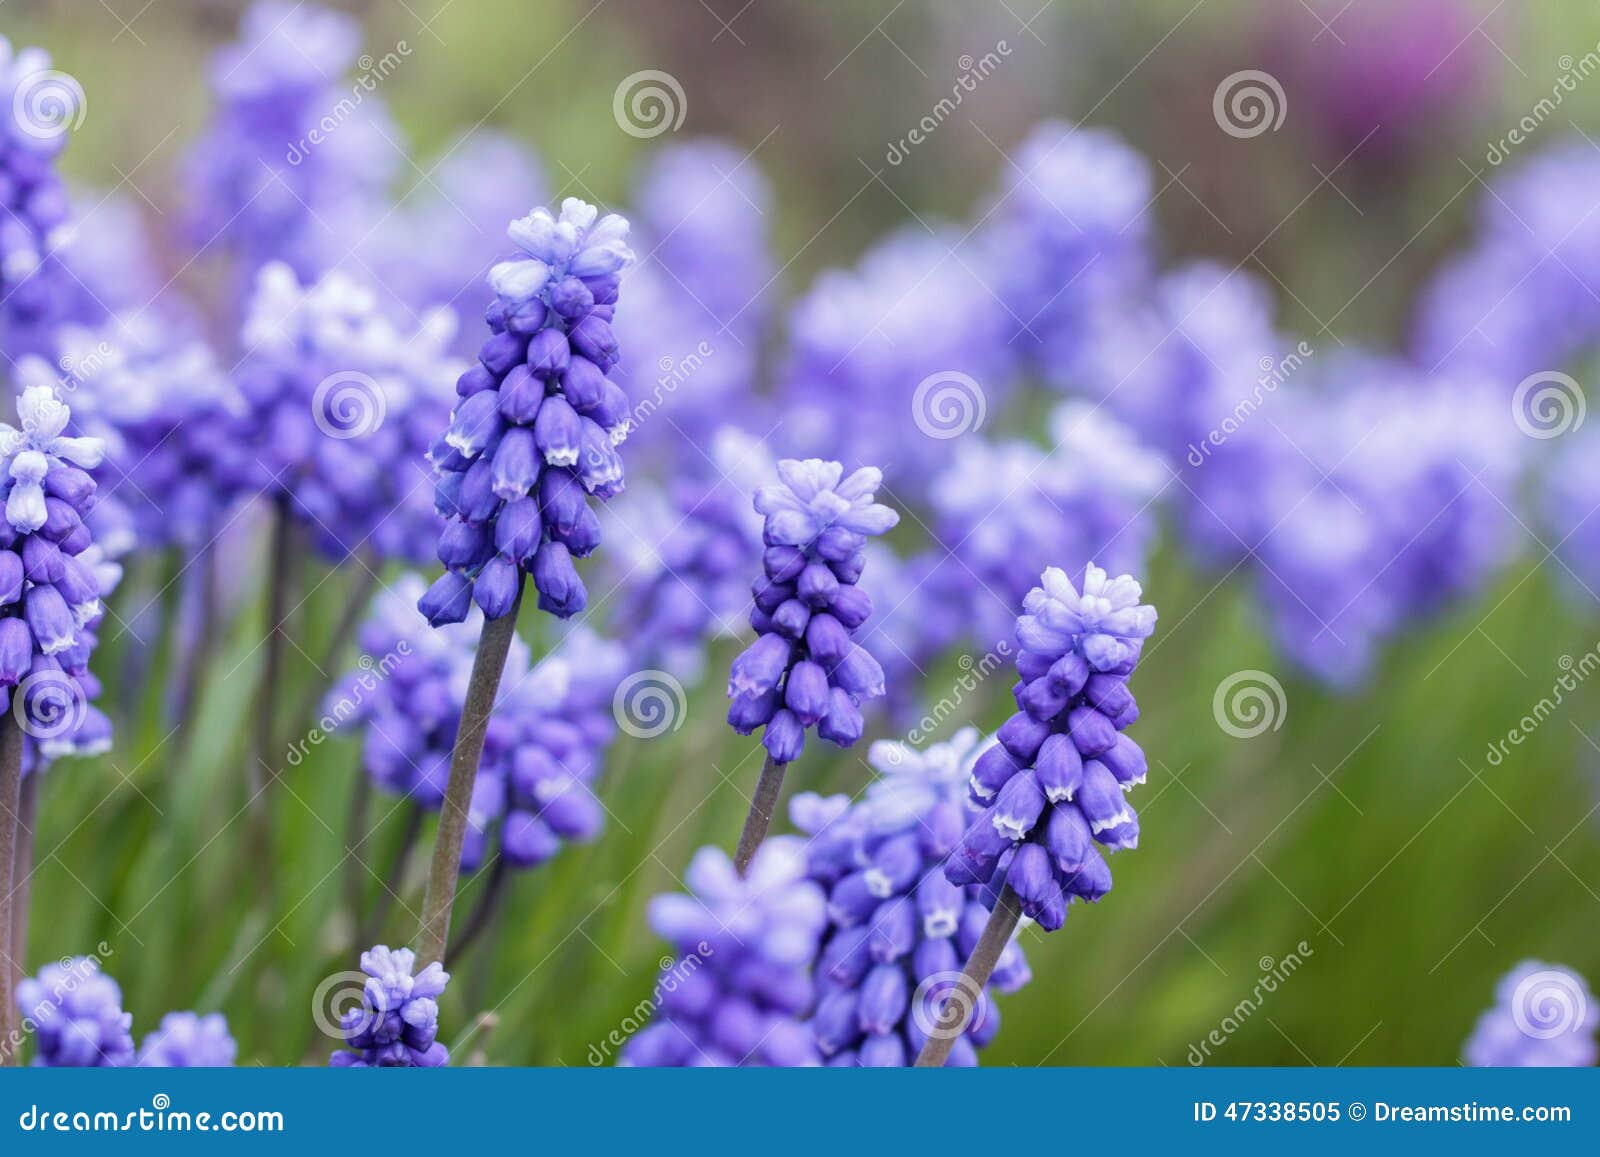 grape hyacinth - muscari armeniacum